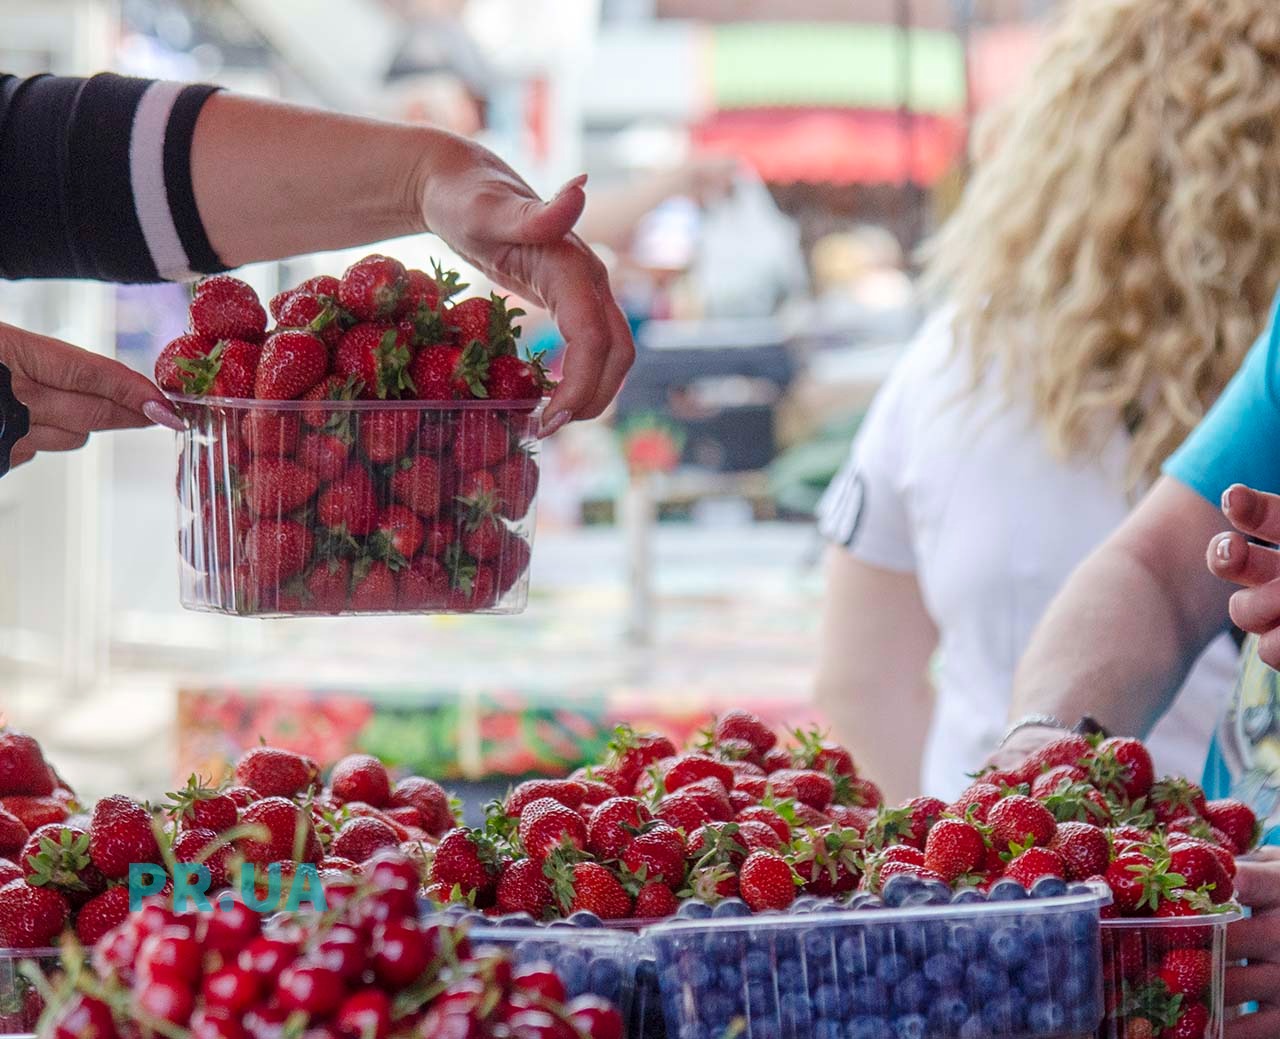 Які ягоди та овочі на ринках Маріуполя найбільш нітратні?